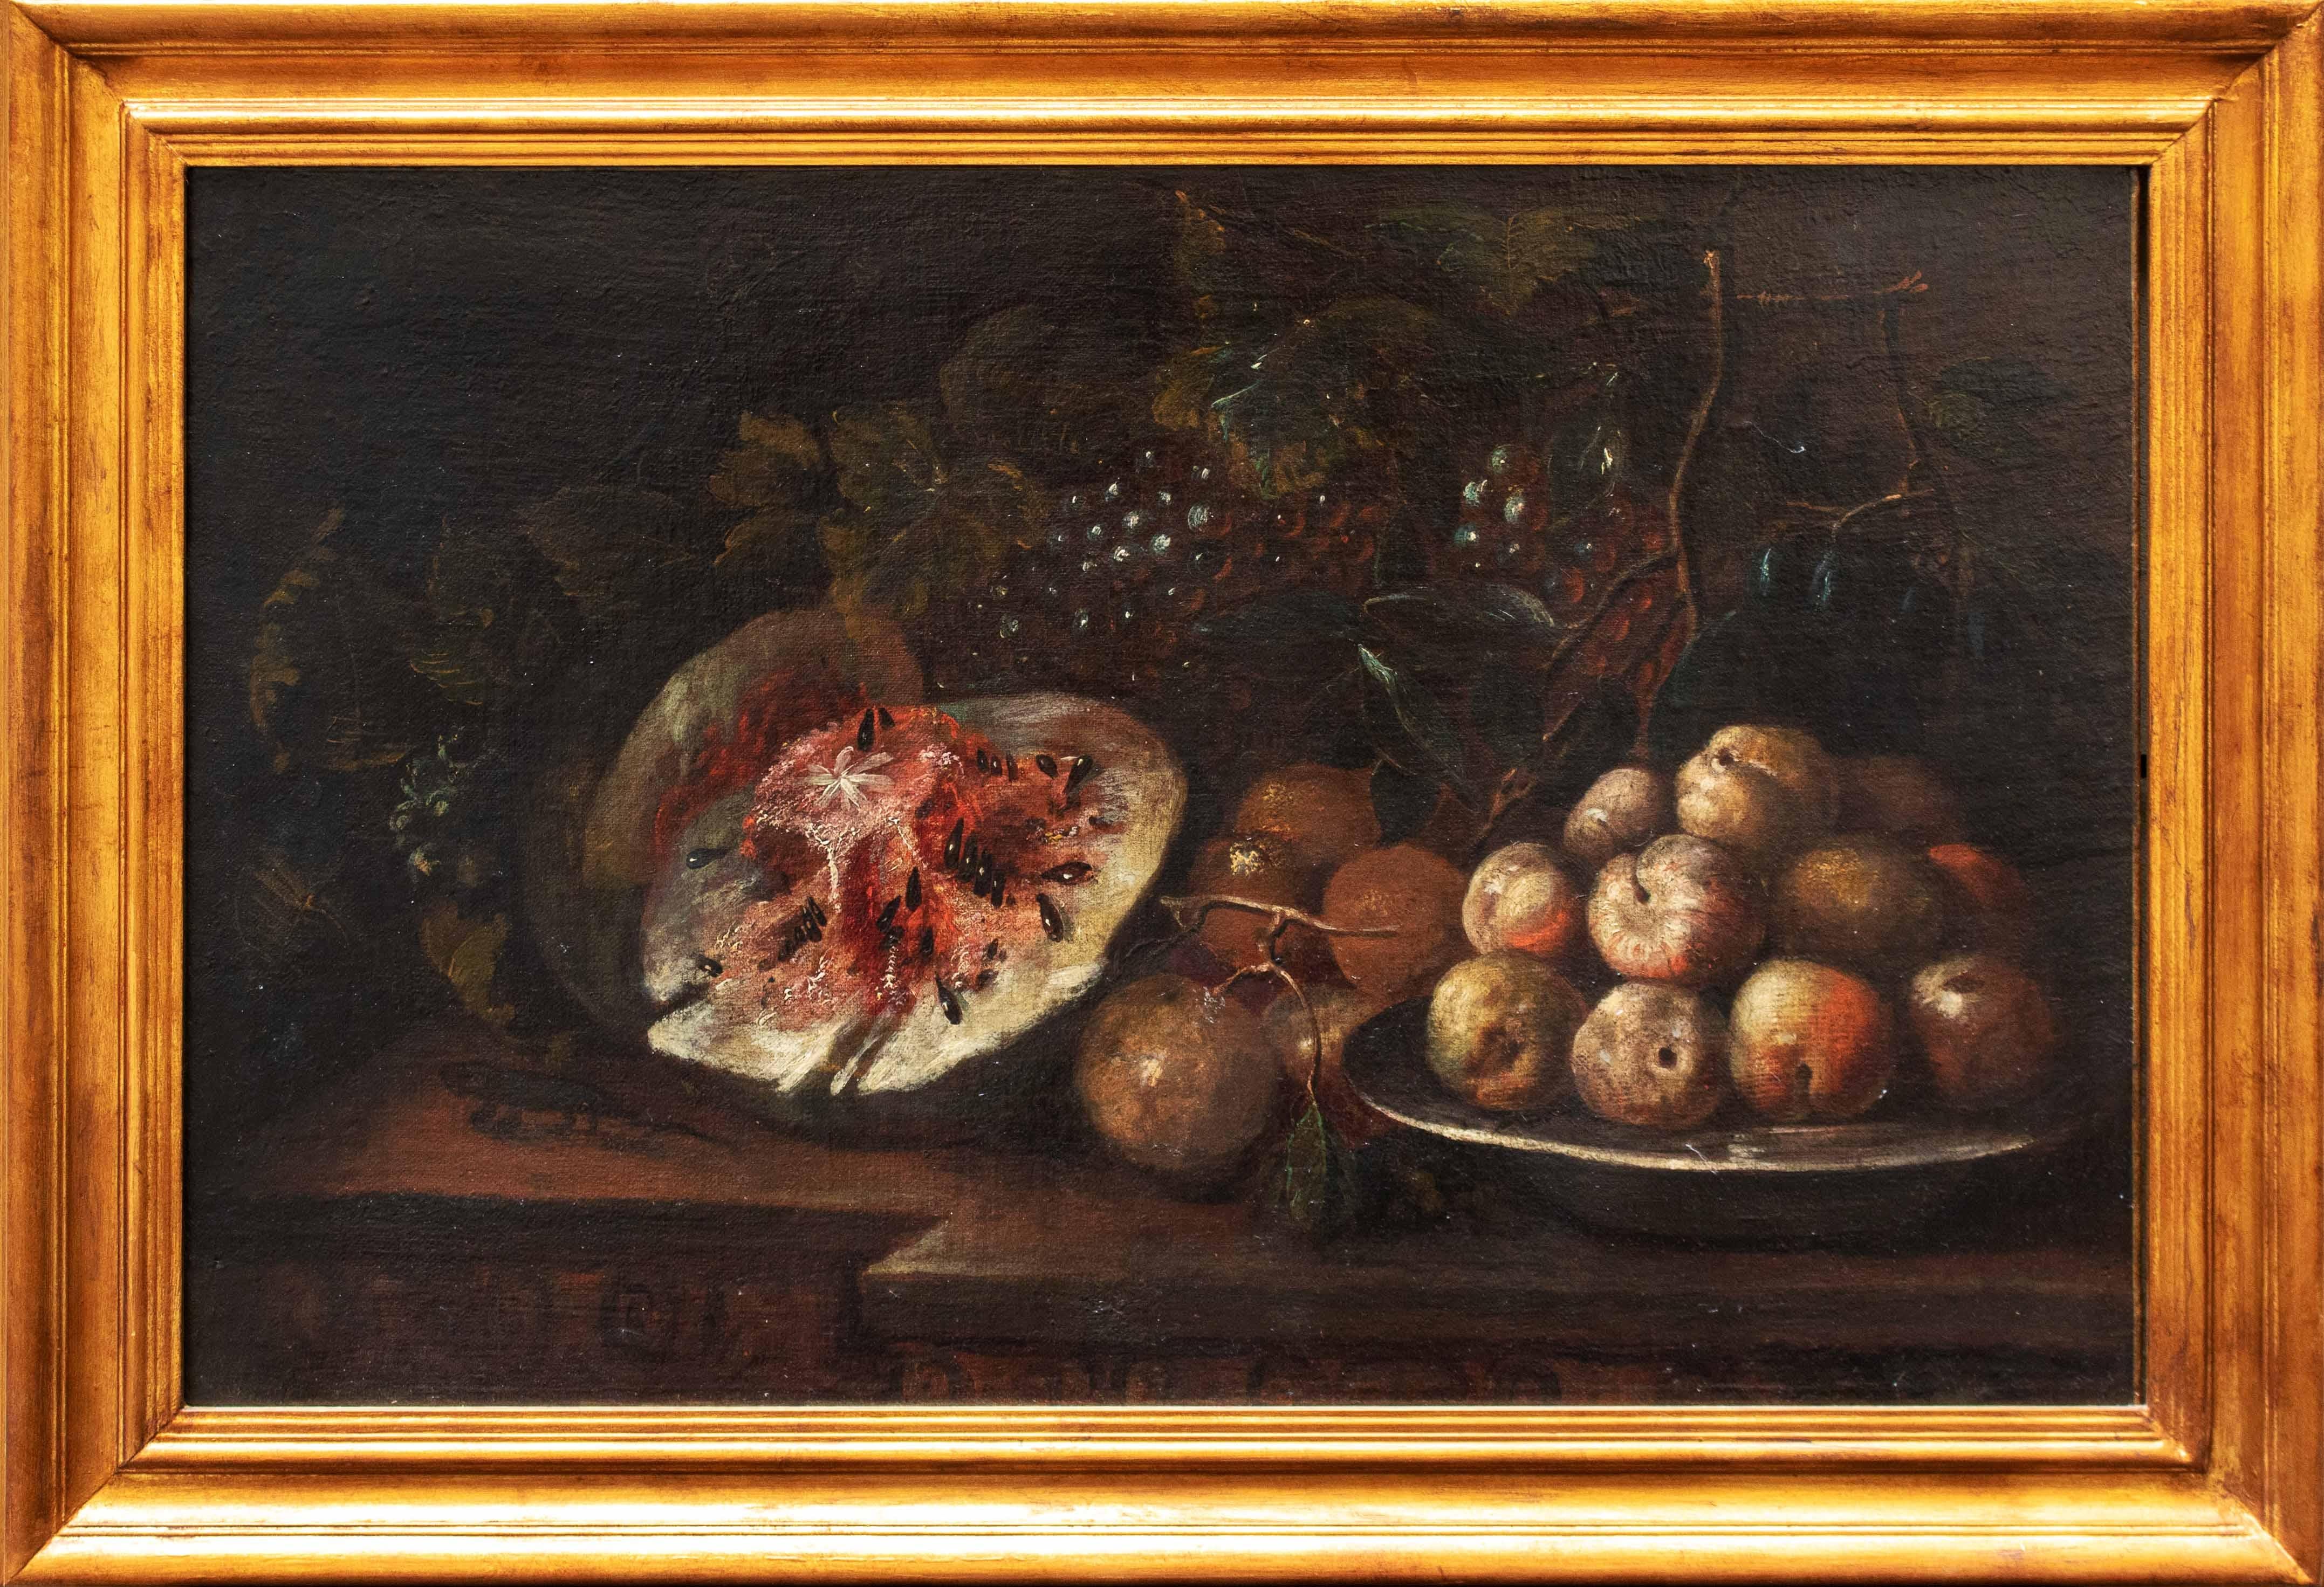 Paolo Paoletti (Padua, 1671 - Udine, 1735)

Stilleben mit Obst in einem Regal

Öl auf Leinwand, 53,5 x 81 cm

Fachwissen Dr. Gianluca Bocchi

Das untersuchte Stillleben stammt aus der Hand von Paolo Paoletti (1671 -1735). Der in Padua geborene